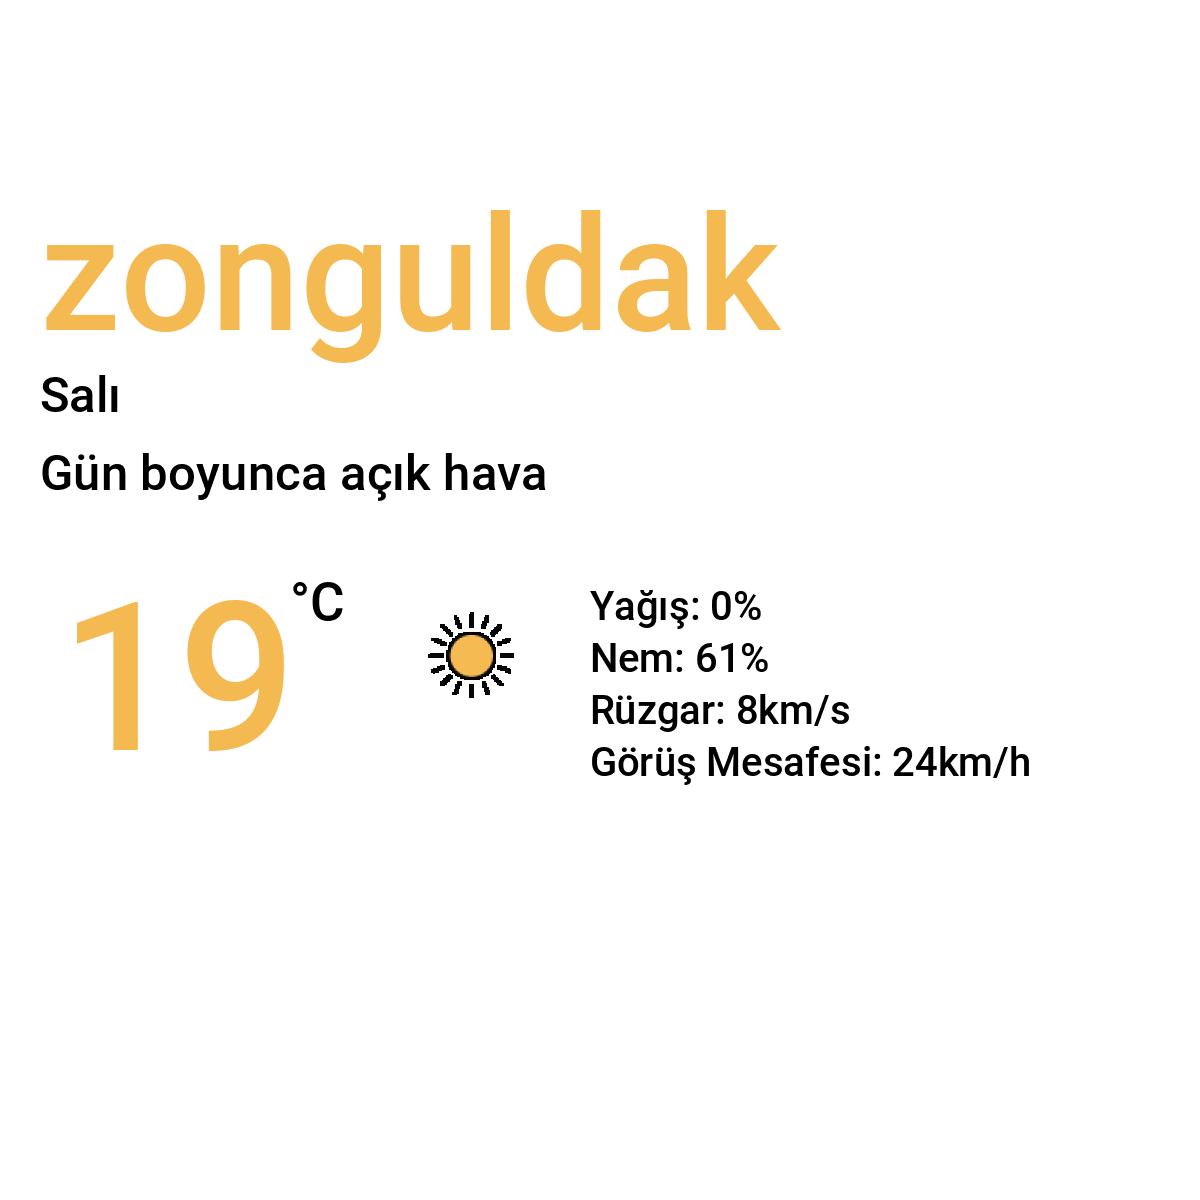 Zonguldak Yarınki Hava Durumu Tahmini